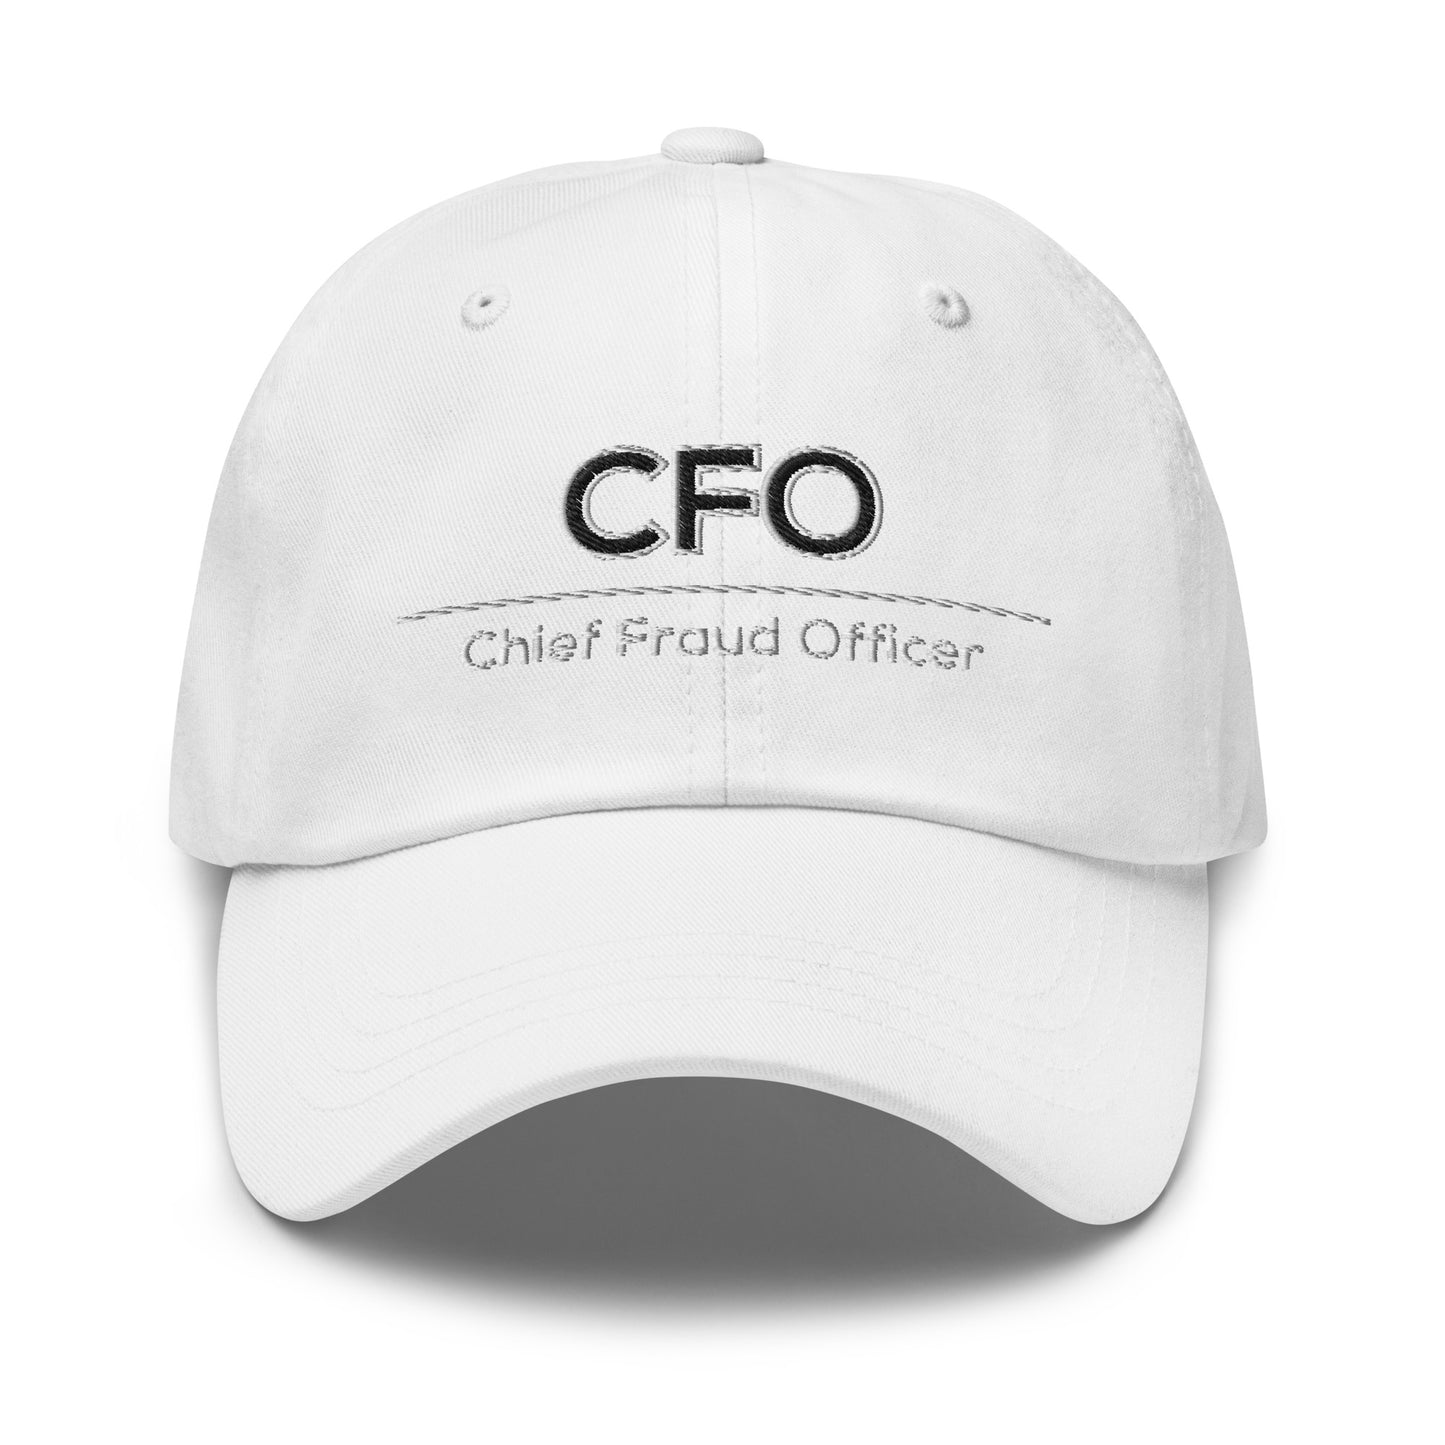 CFO Cap